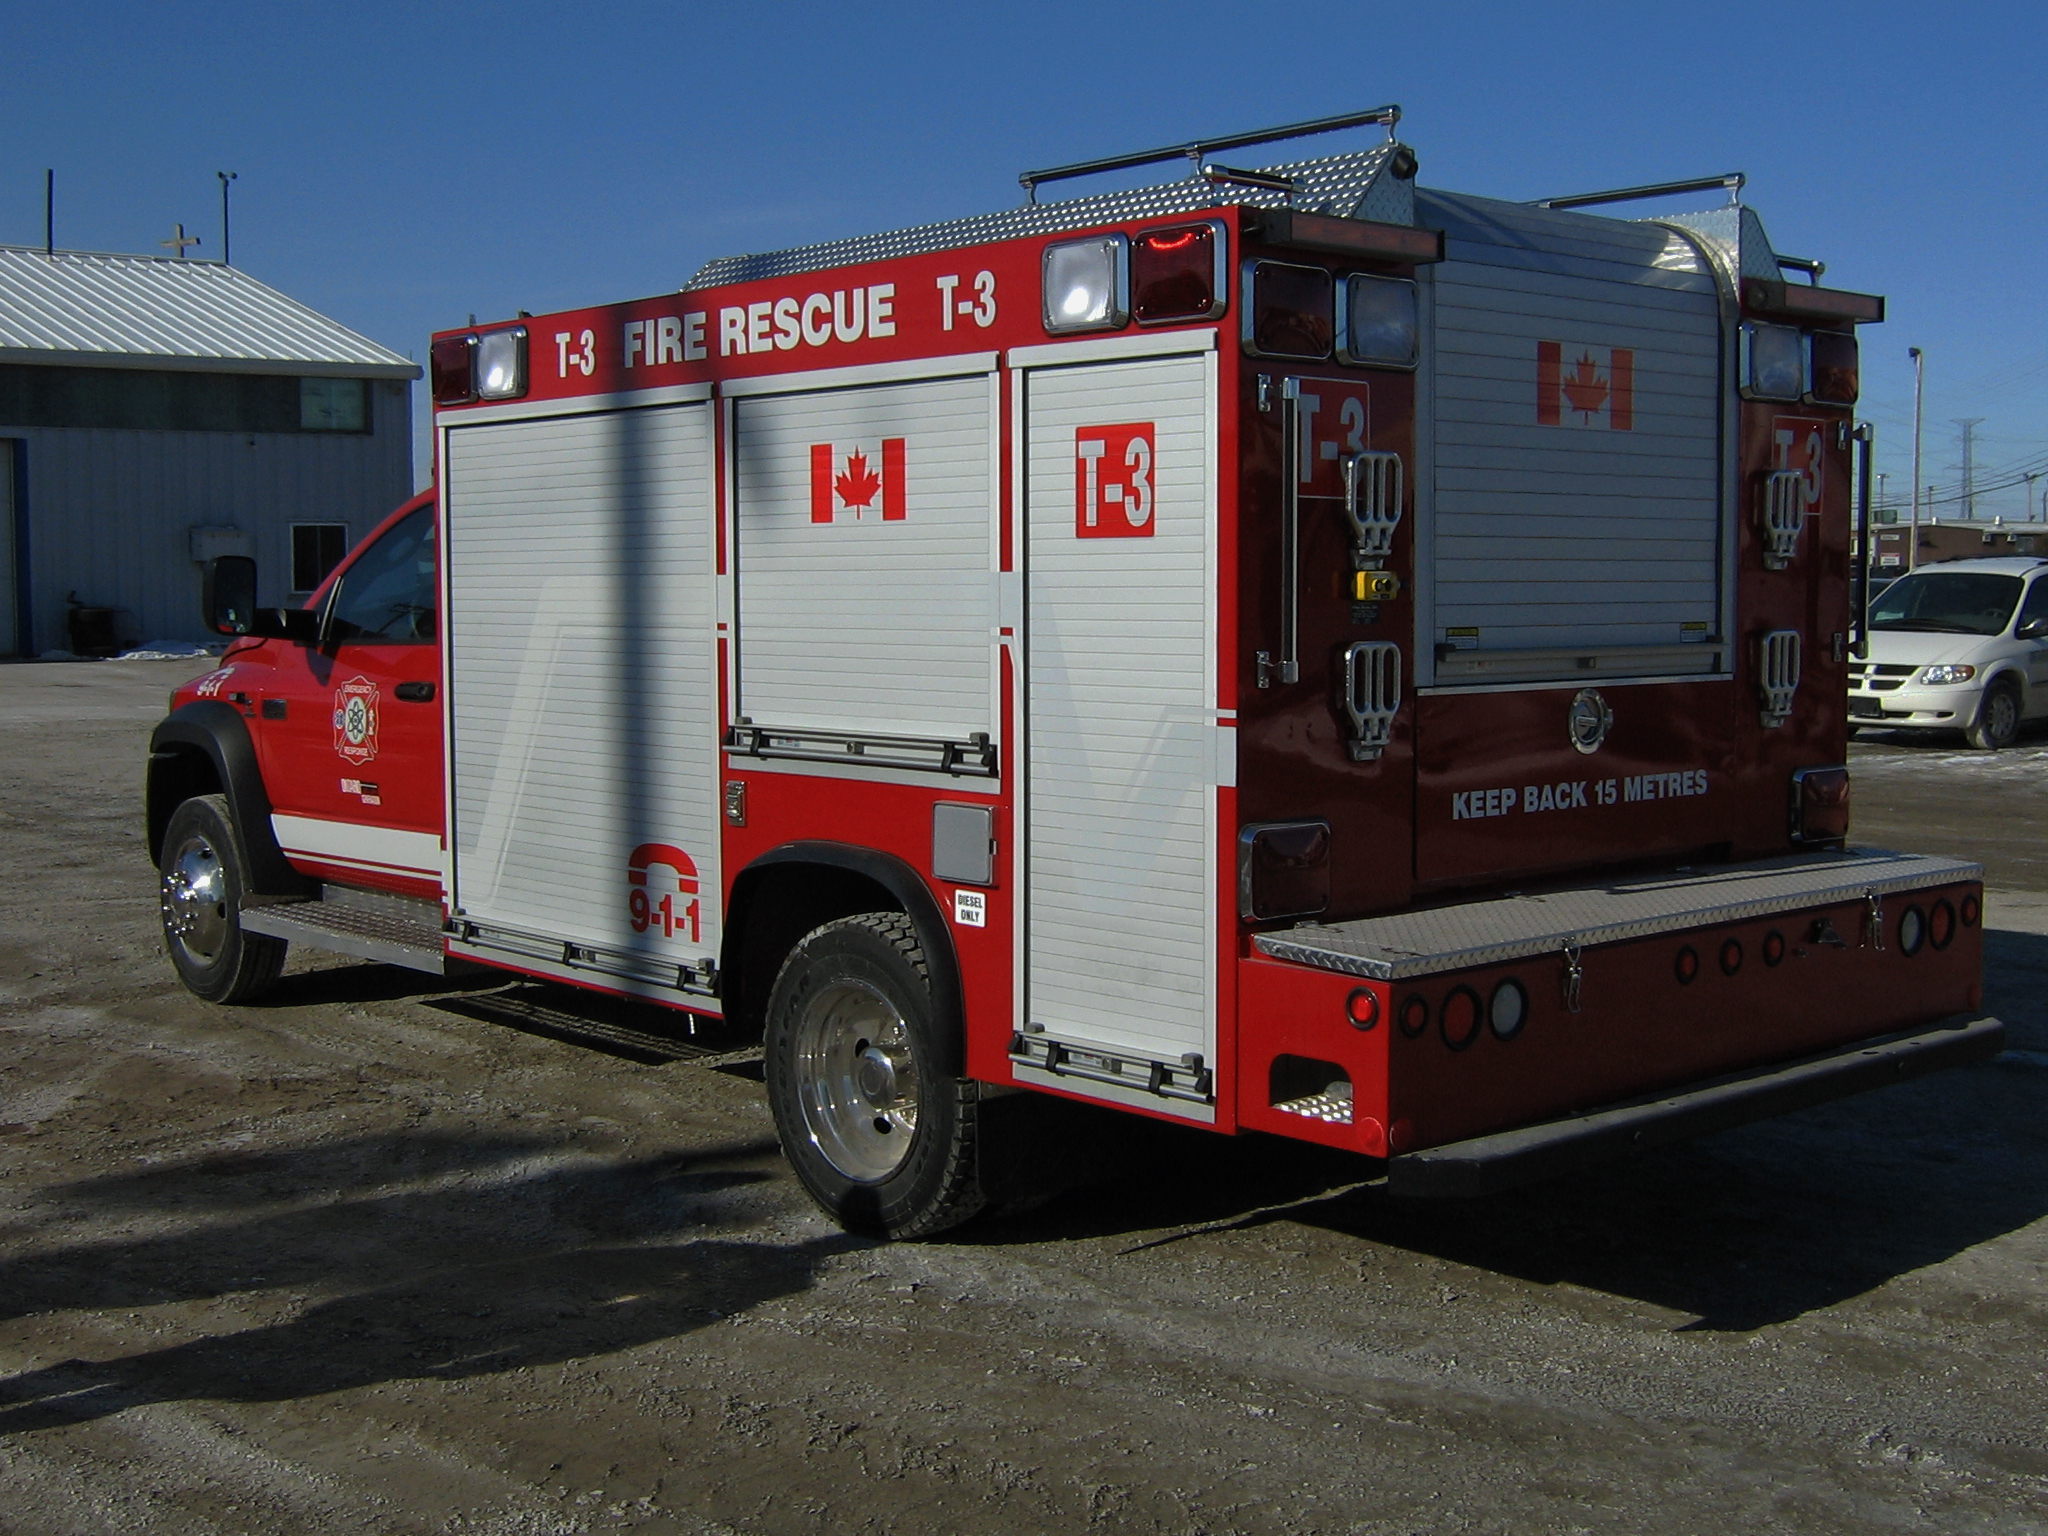 Fire rescue truck